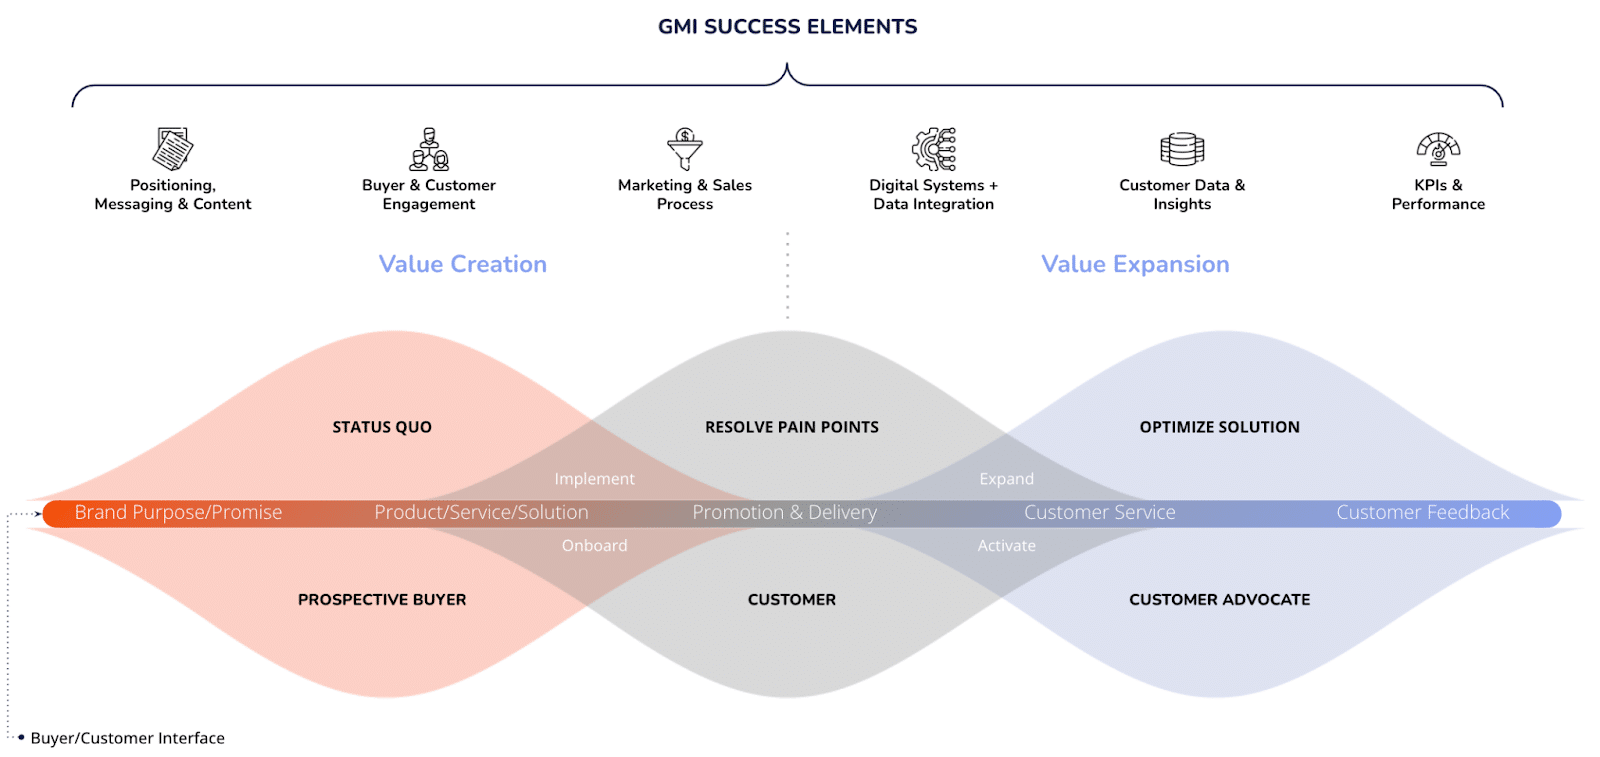 GMI success elements